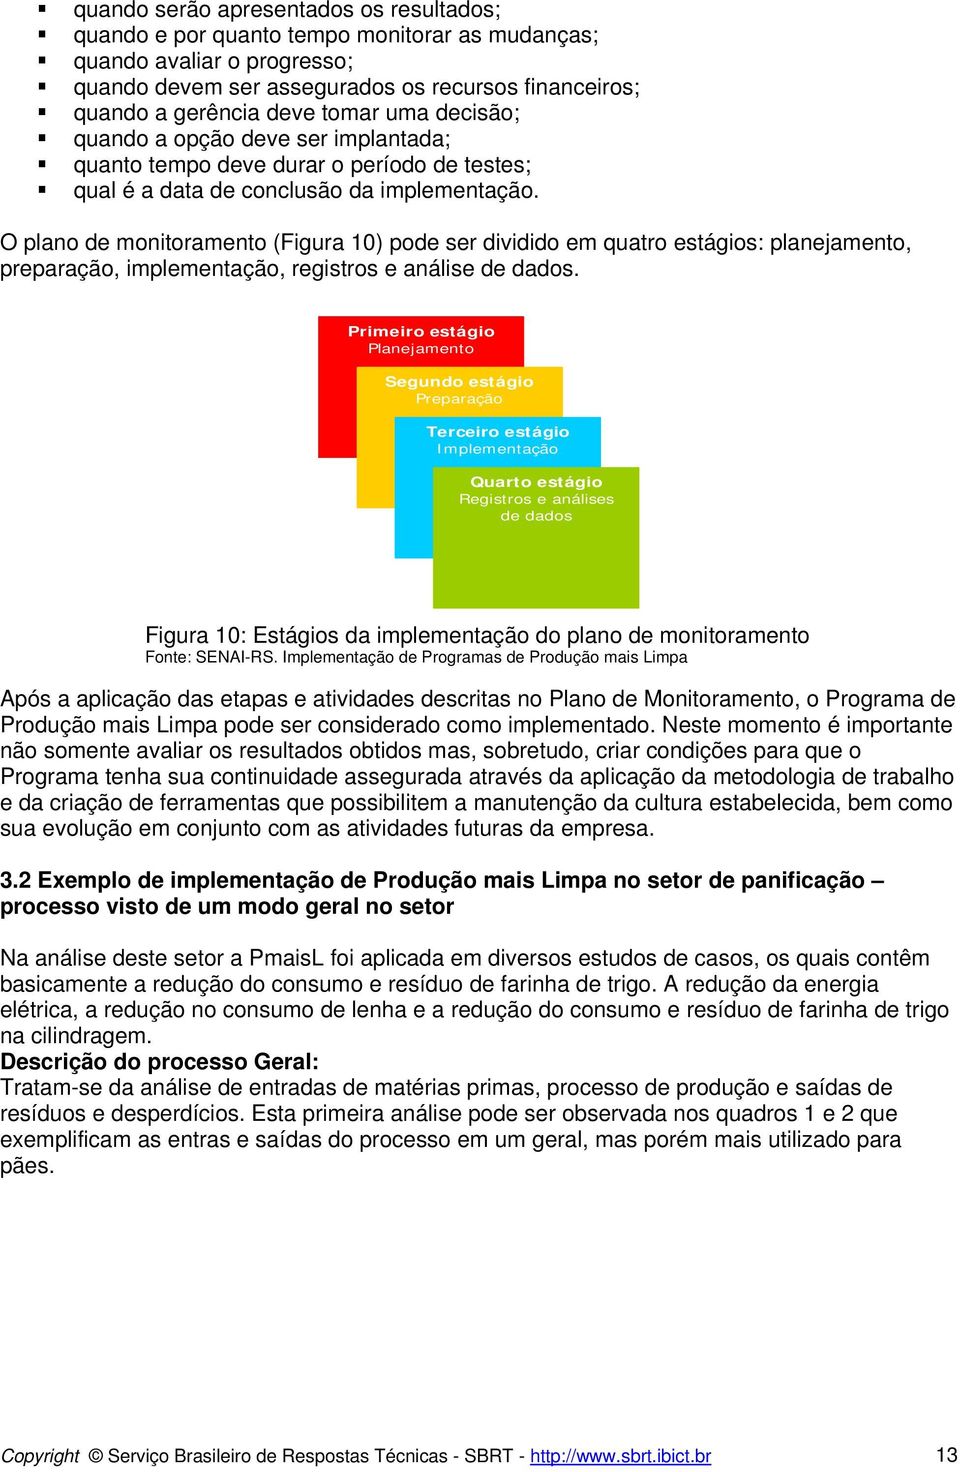 O plano de monitoramento (Figura 10) pode ser dividido em quatro estágios: planejamento, preparação, implementação, registros e análise de dados.